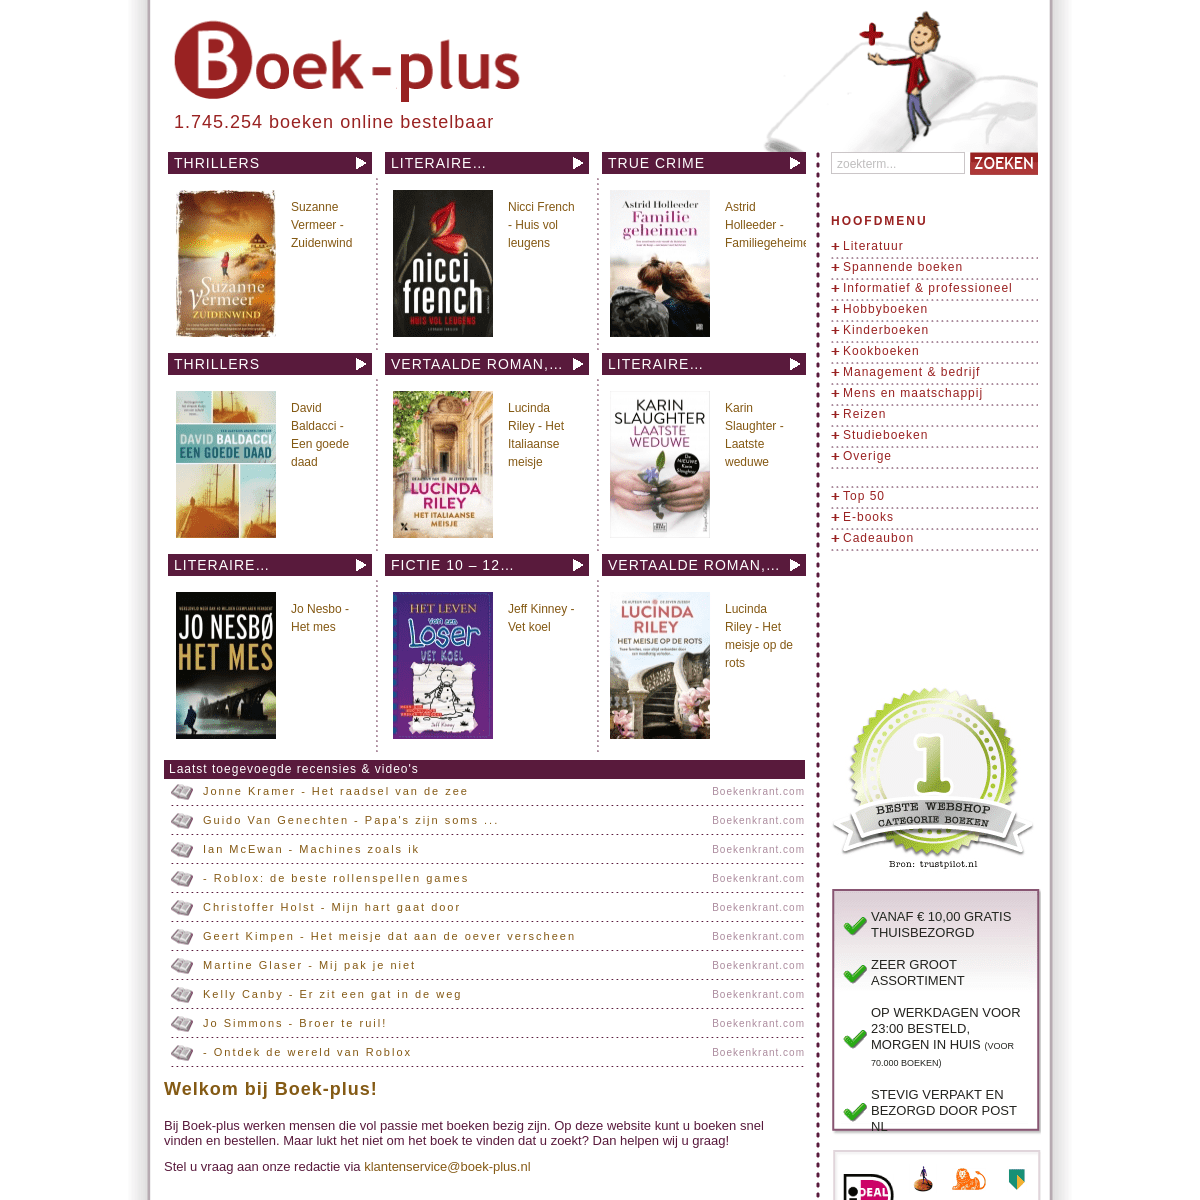 Boek-plus.nl - Boek-plus.nl -  online boekwinkel  - alleen maar boeken - gratis bezorging vanaf €10 - voor 23.00 besteld, de vol